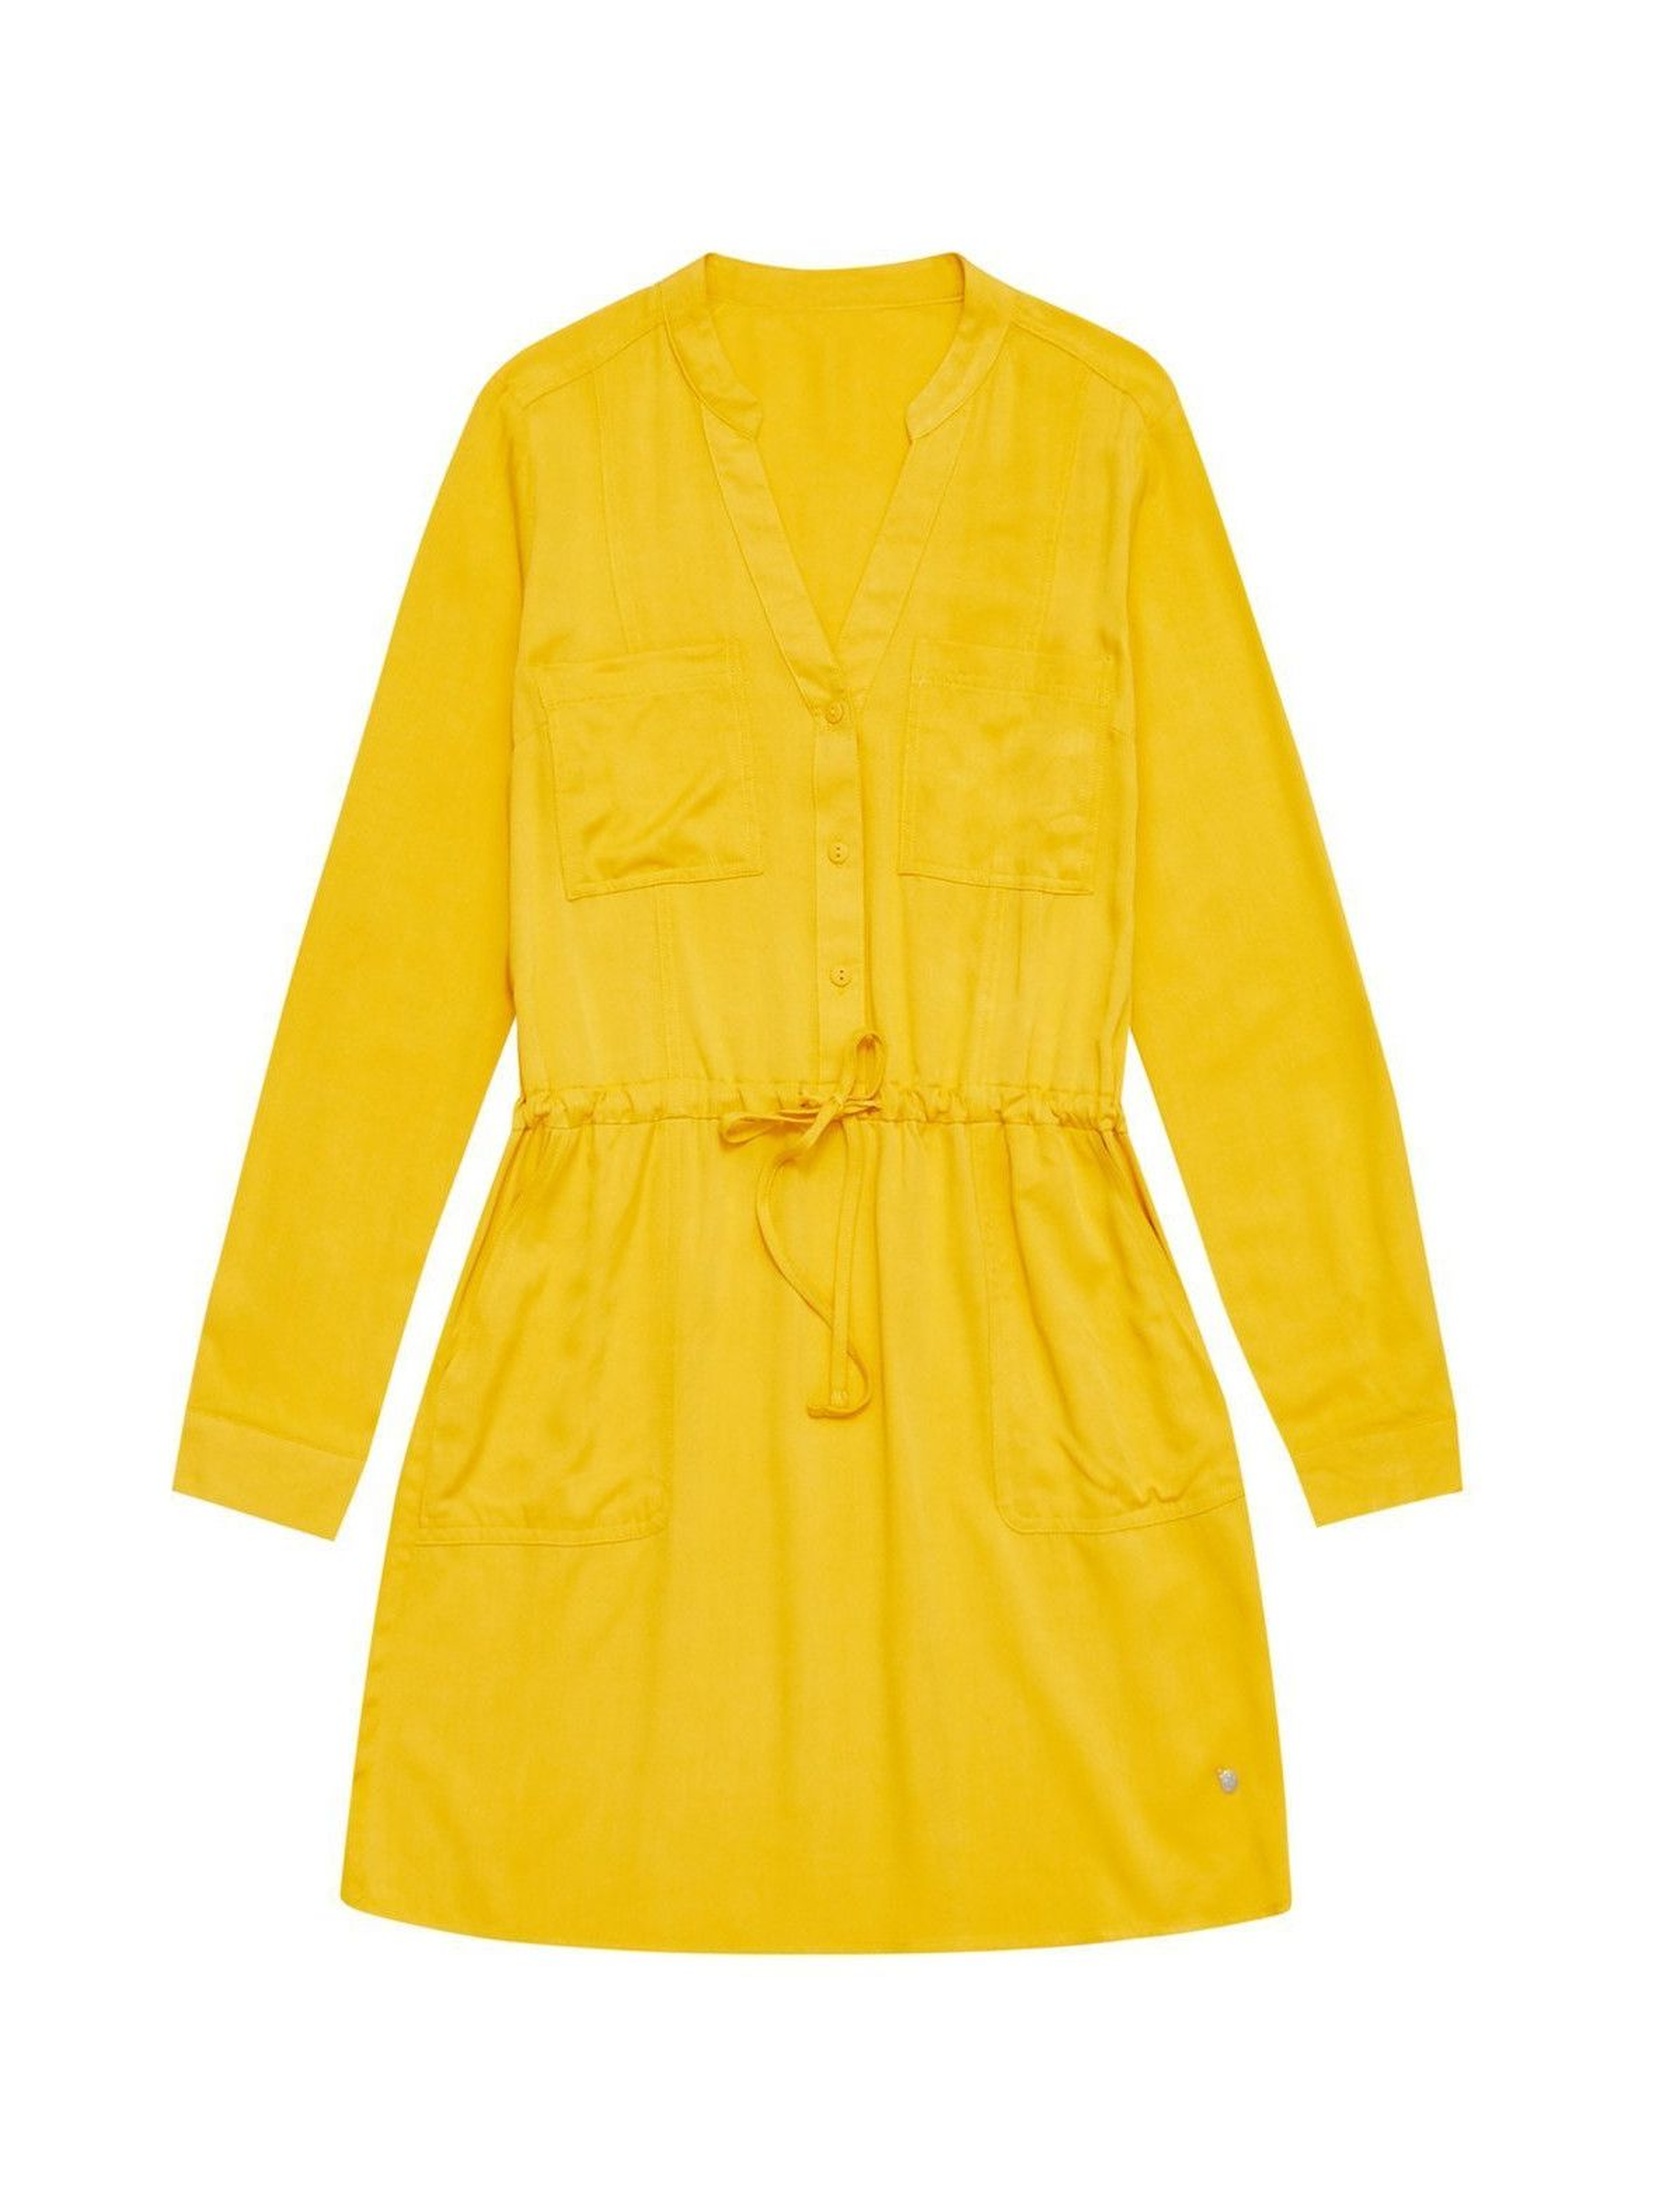 Żółta sukienka damska ze ściągaczem w pasie